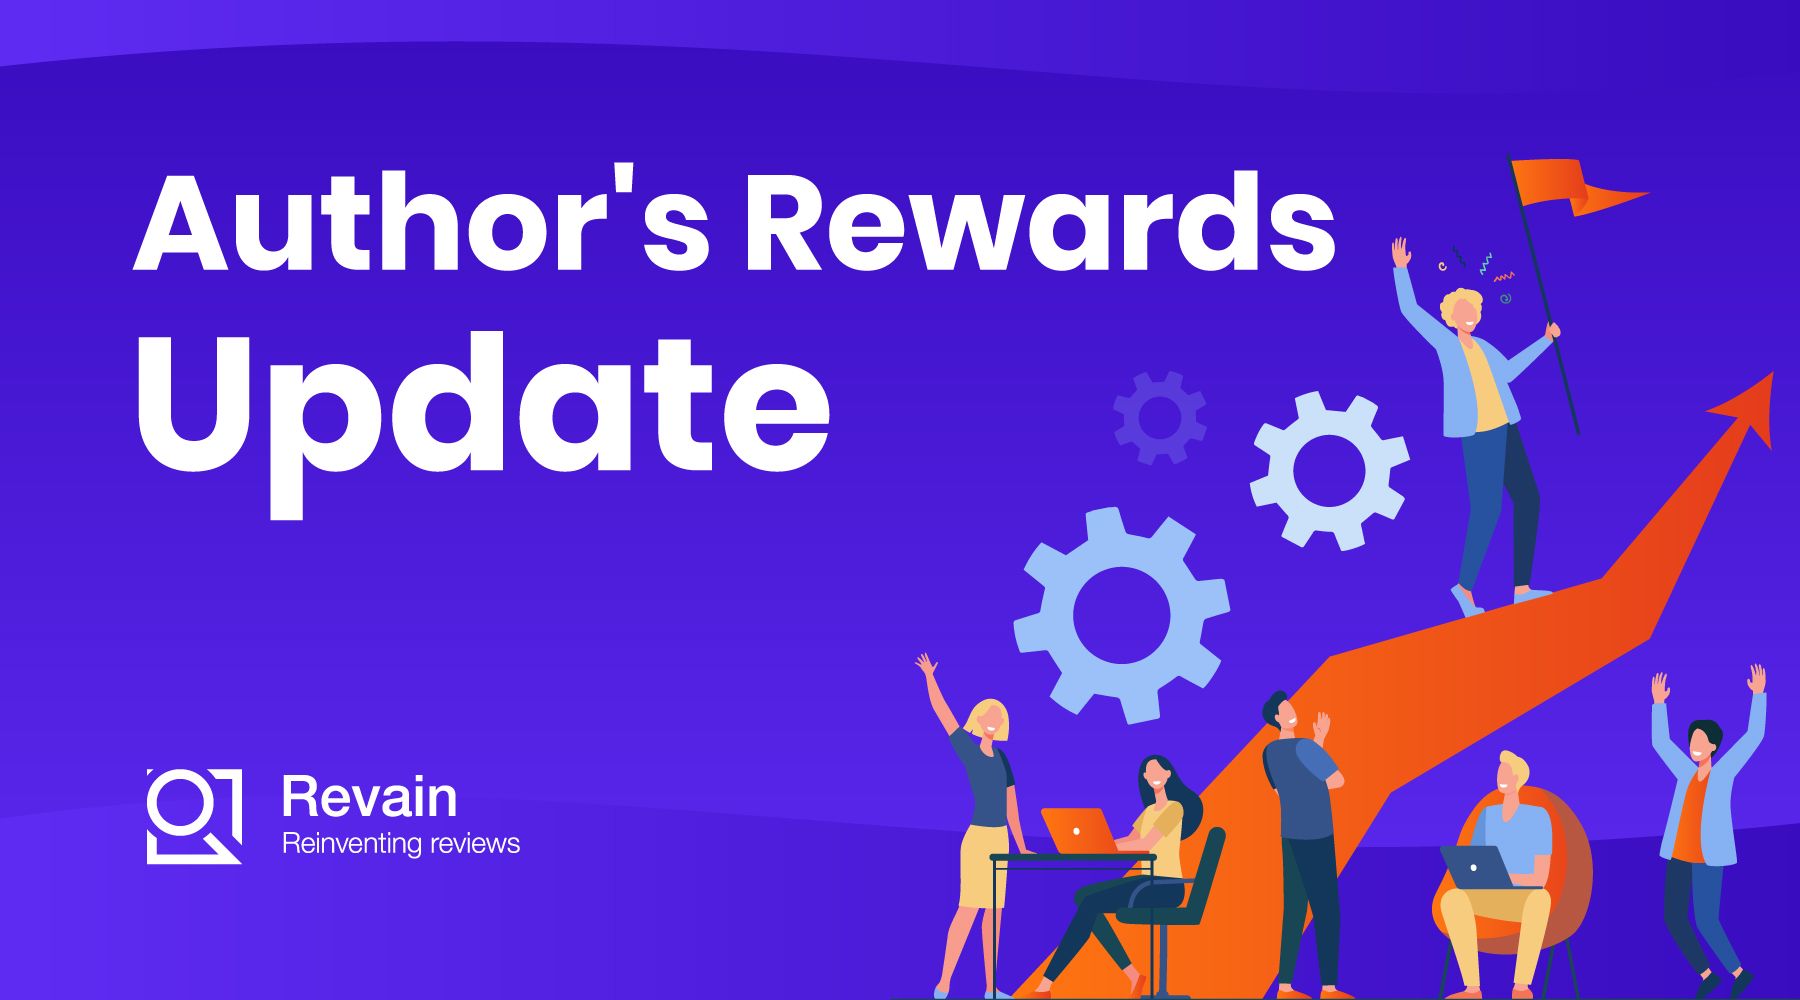 Article Author's Rewards Update